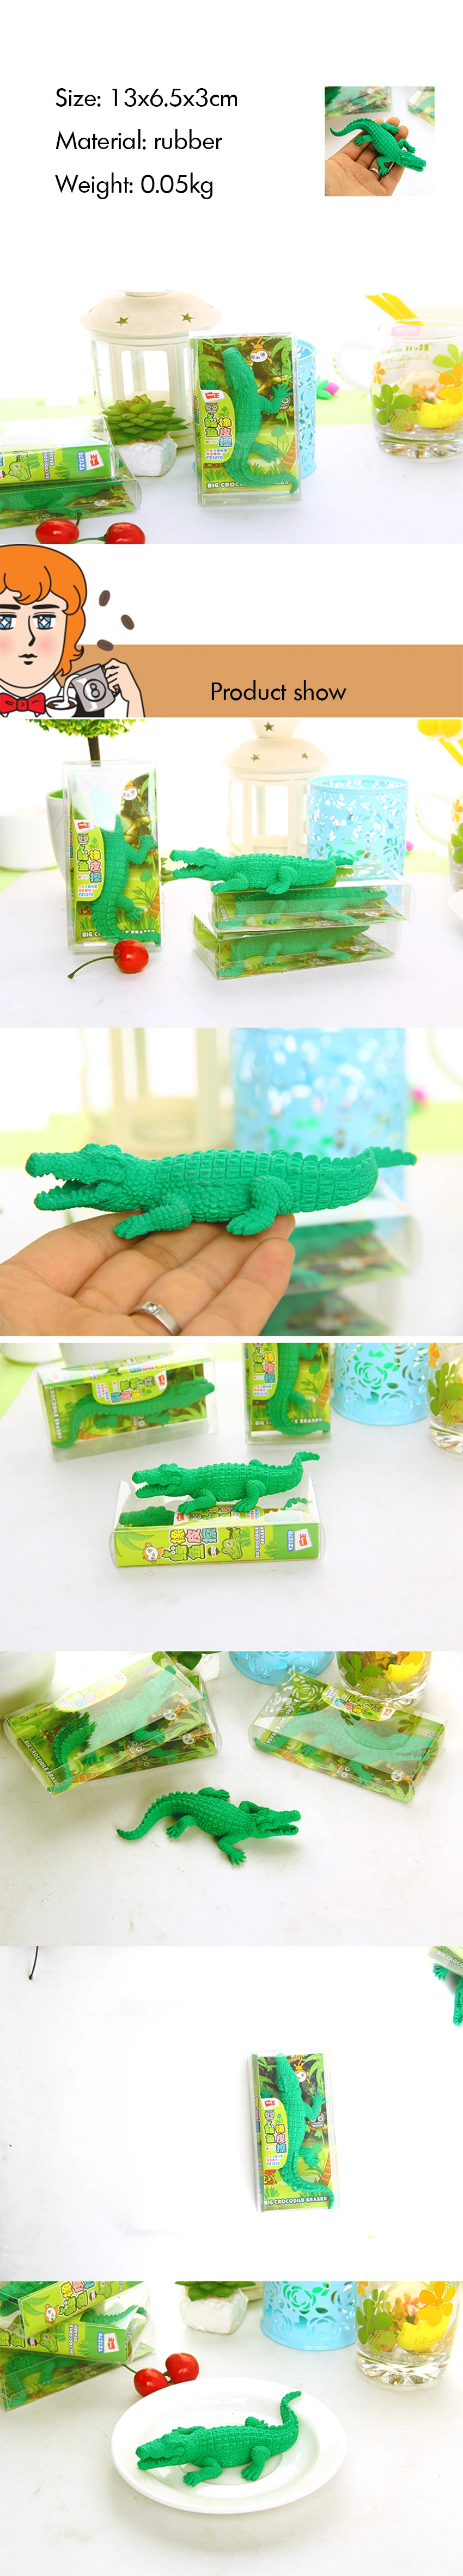 Зеленый Крокодил Ластик резиновый карандаш ластик для подарок на день рождения сувениры, Игры призы, карнавалы подарок и школьные